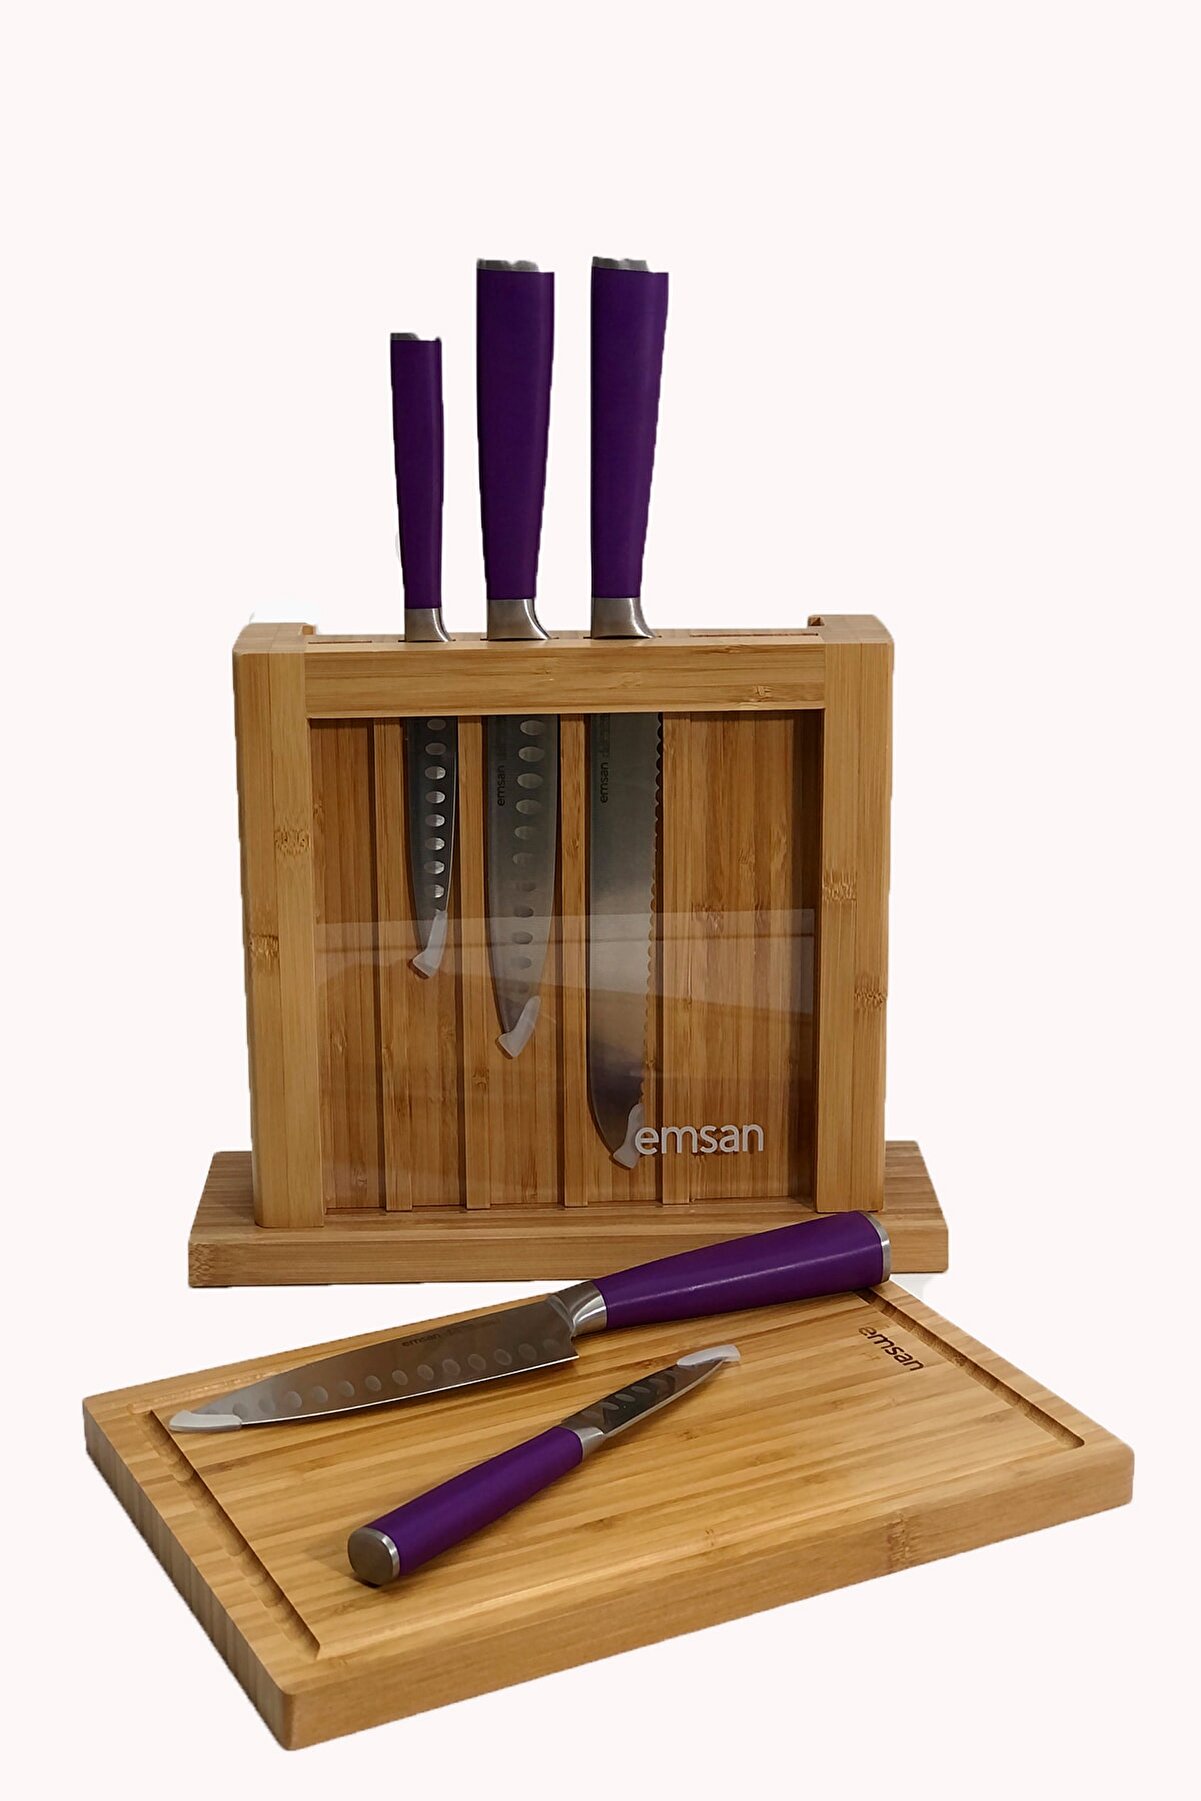 ست چاقوی آشپزخانه 7 پارچه امسان مدل Emsan Matriks Mor